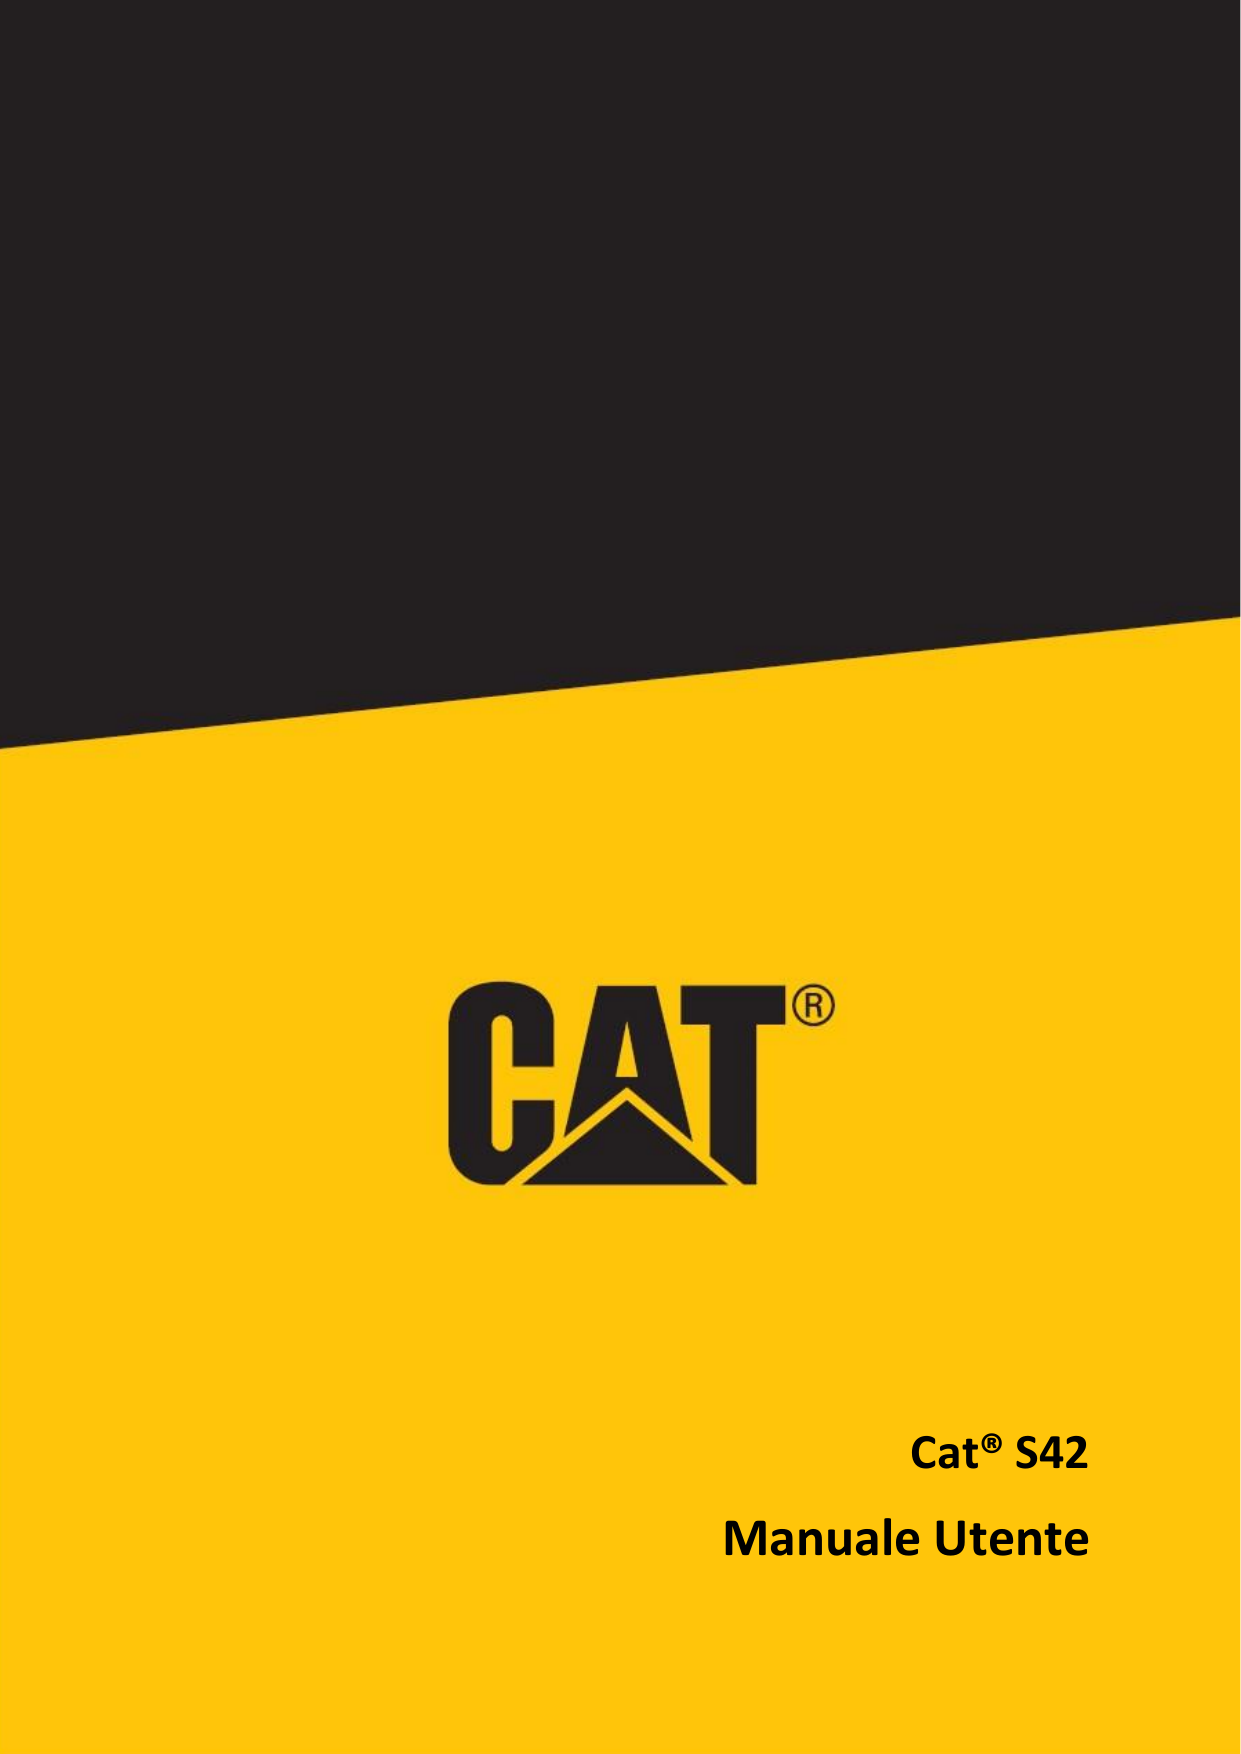 Cat® S42Manuale Utente1